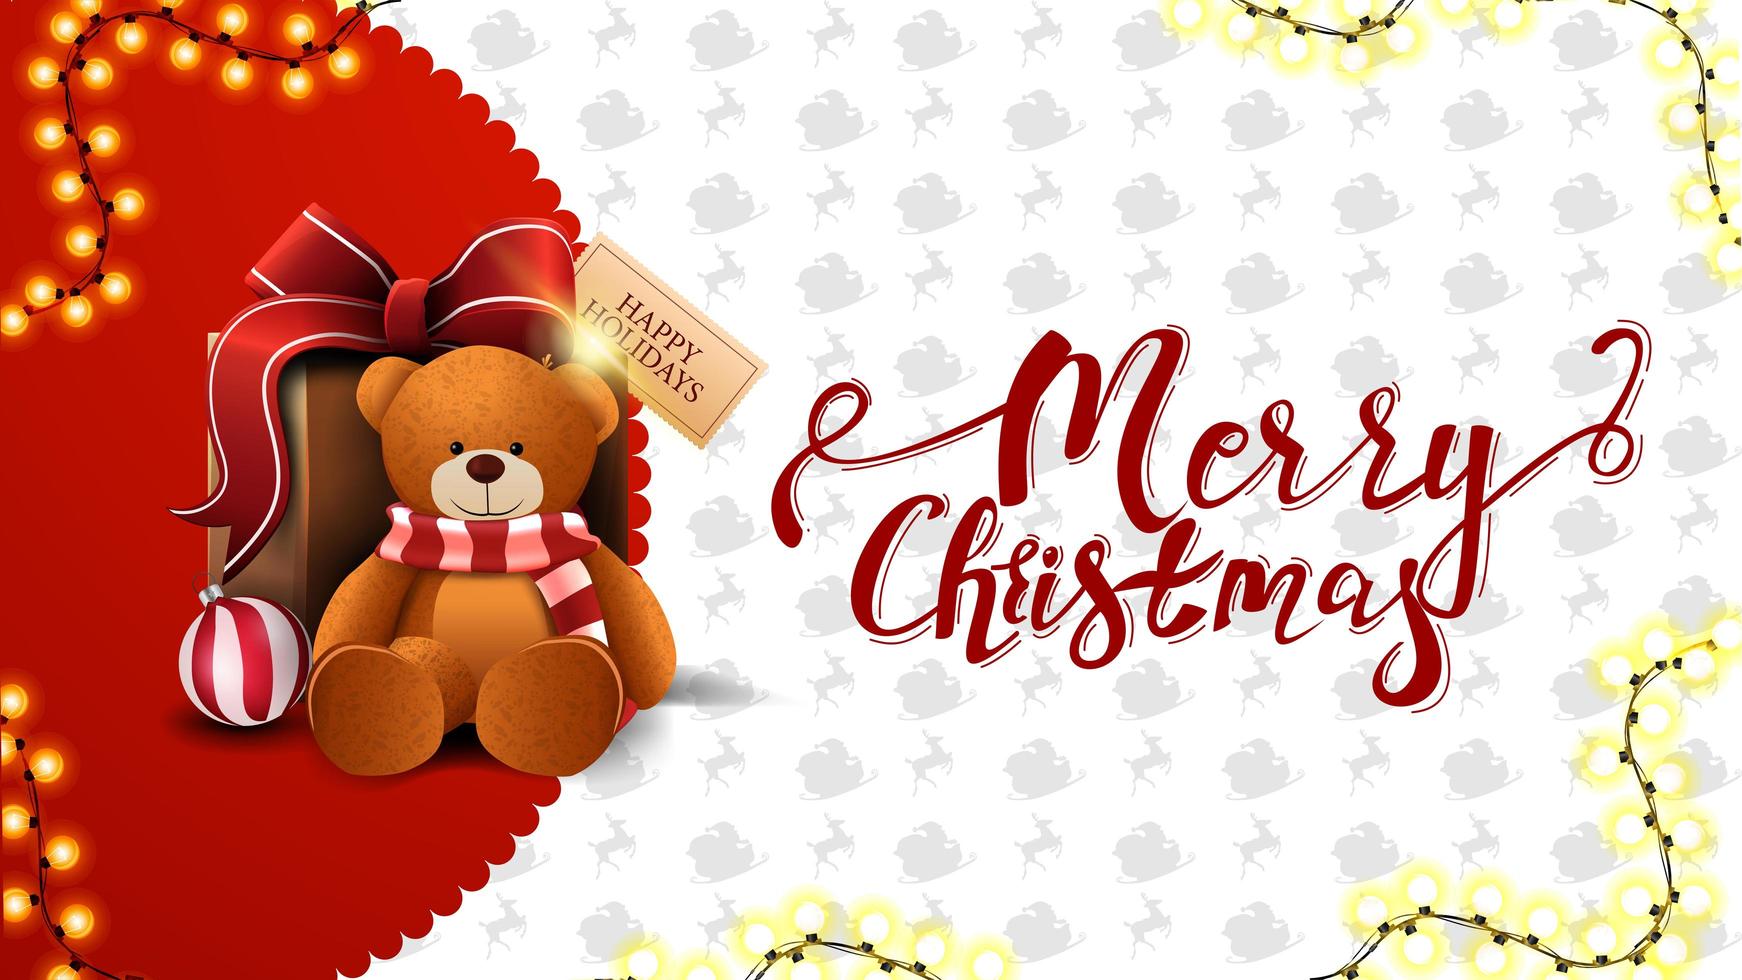 feliz navidad, tarjeta de felicitación roja y blanca con guirnalda y regalo con osito de peluche vector